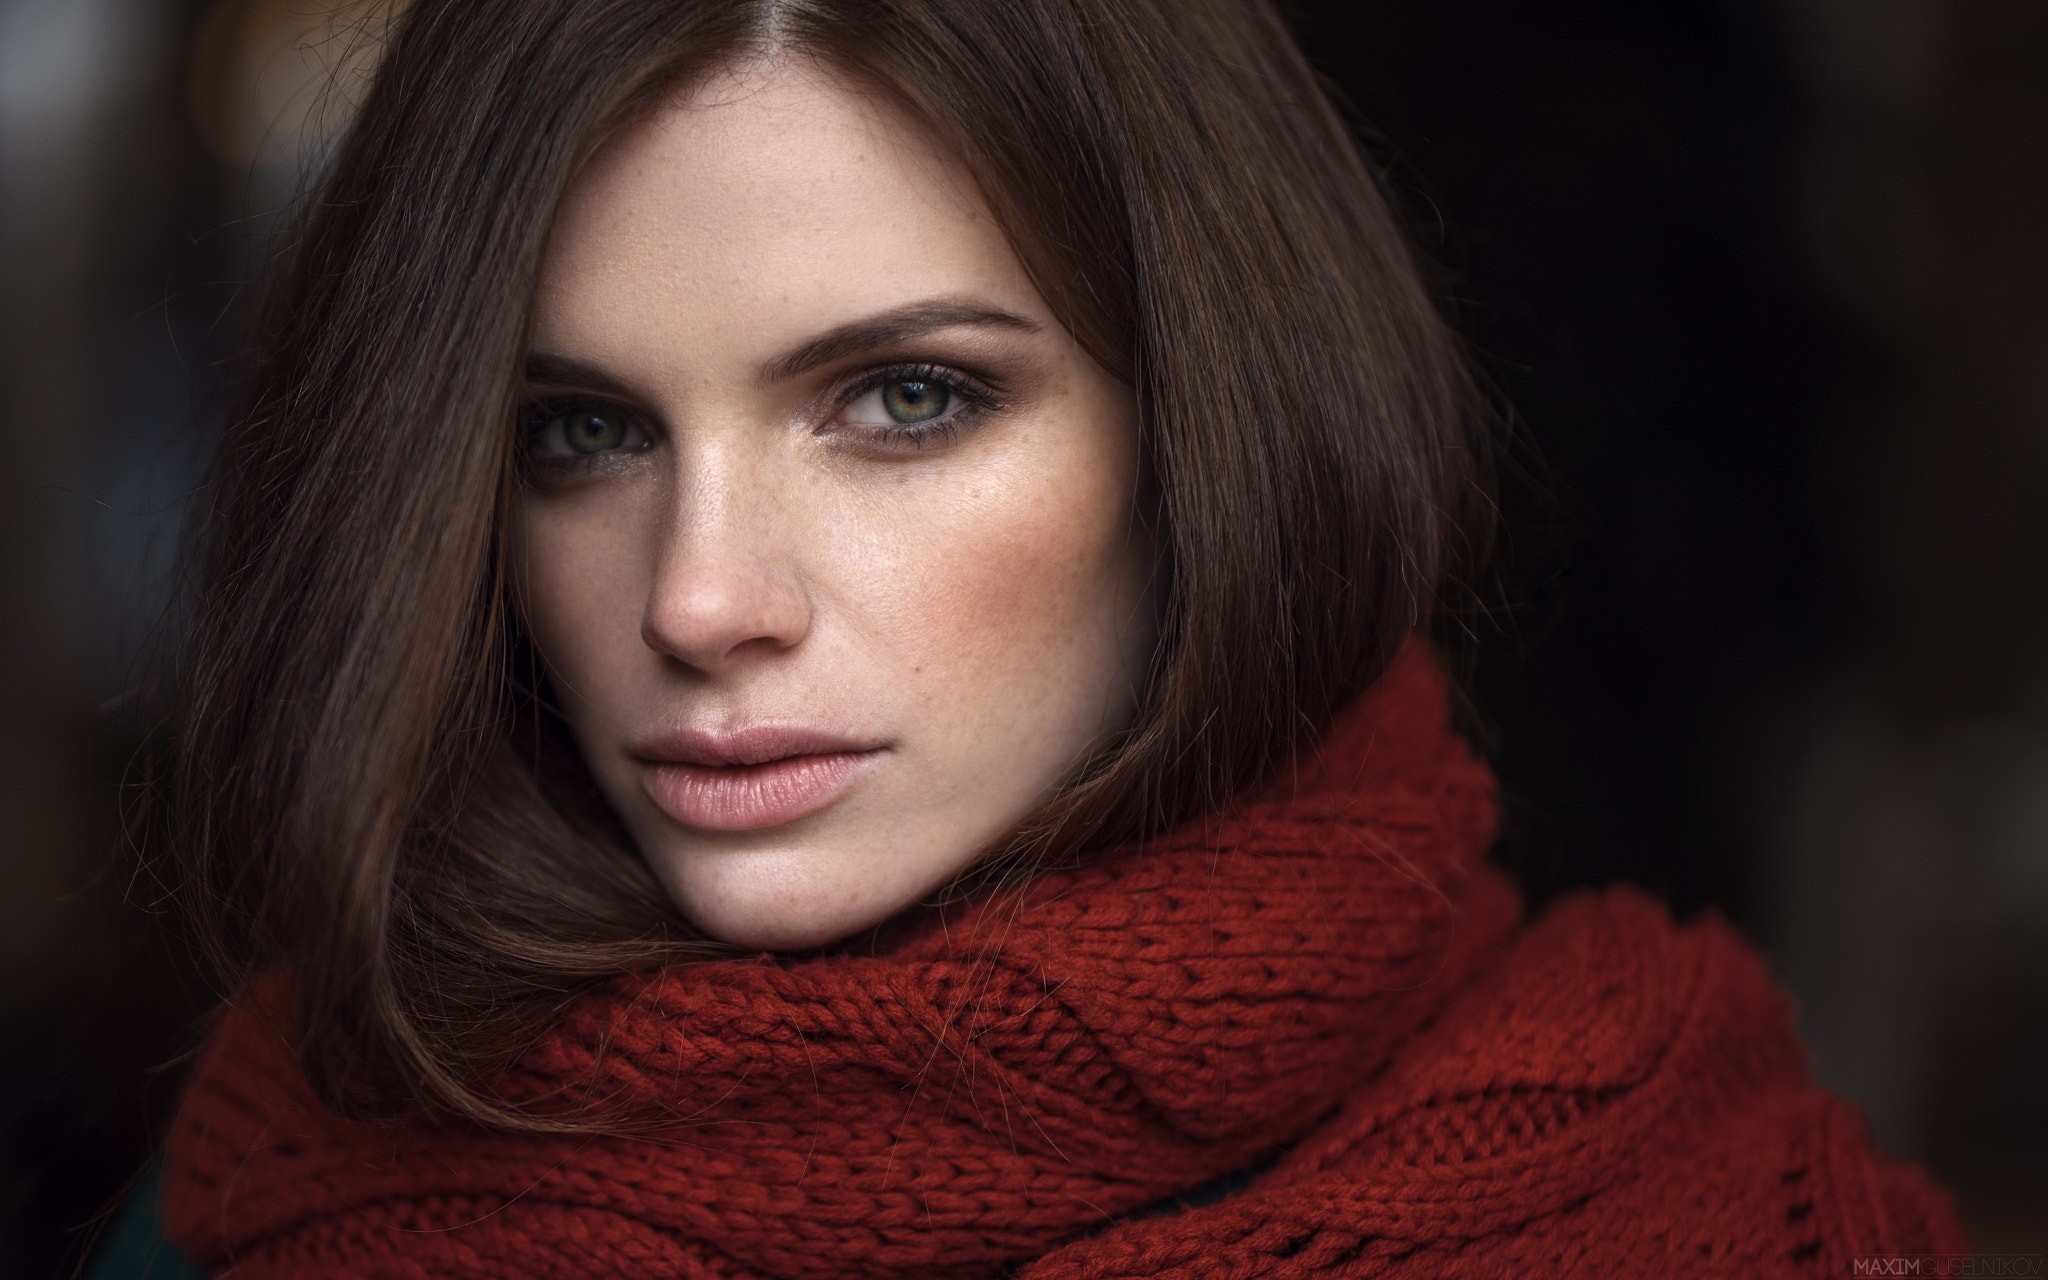 Бесплатное фото Портрет темноволосой девушки с красным шарфом